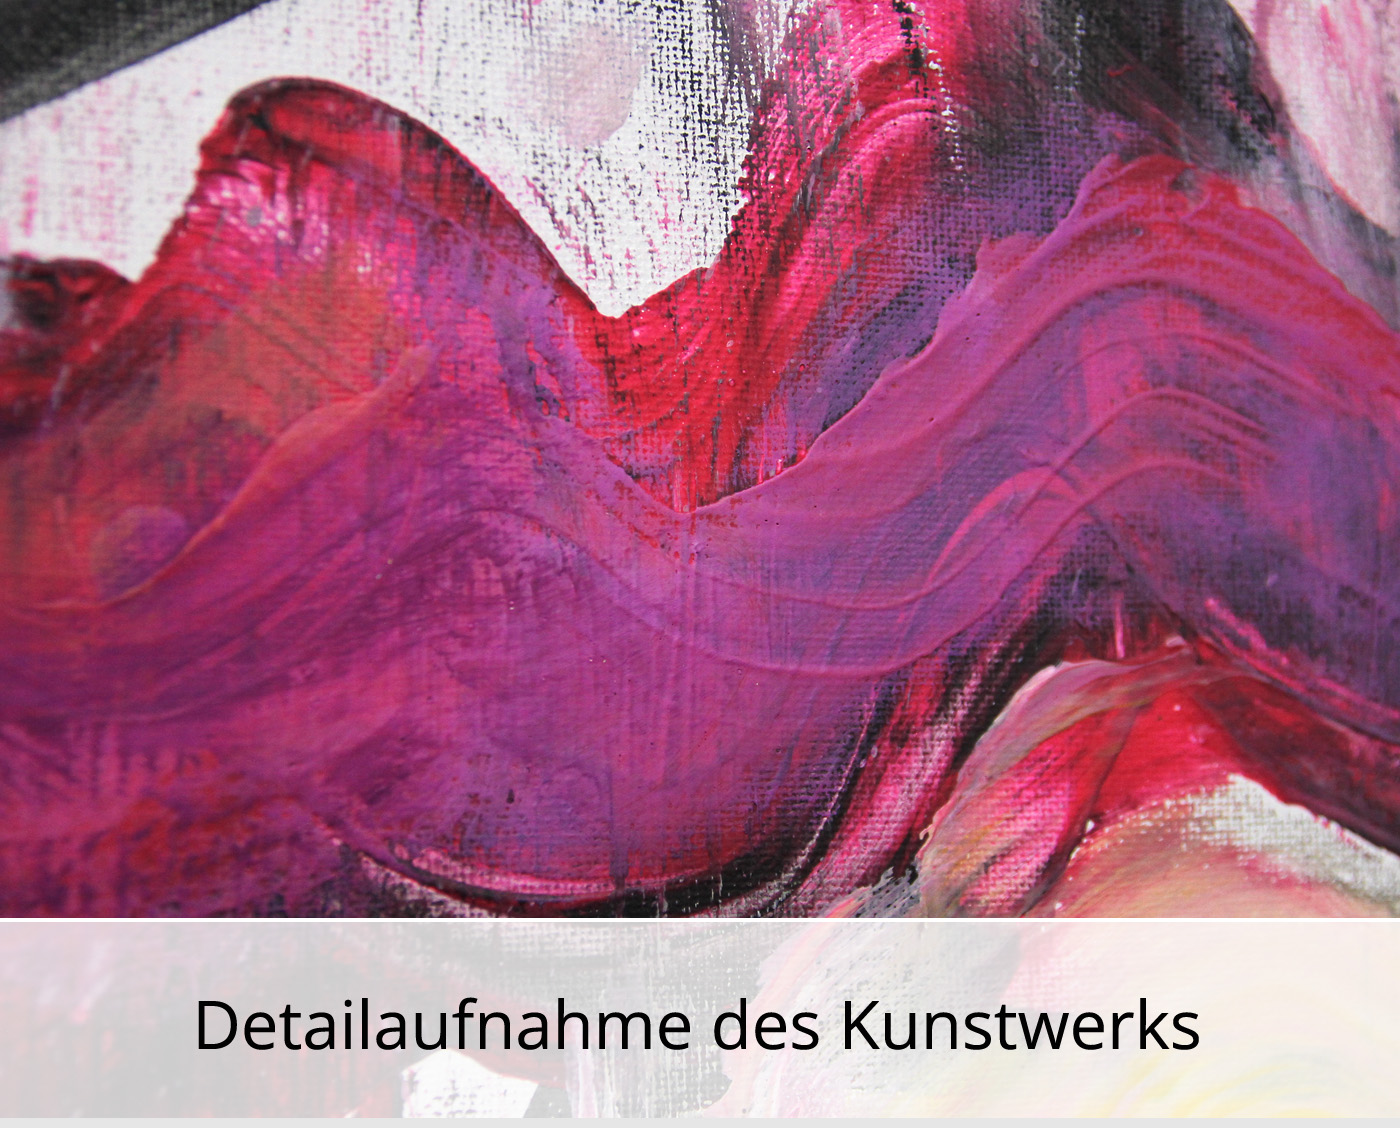 M. Cieśla: "Inspired by Music - Die Antwoord", Original/Unikat, Expressionistisches Ölgemälde (A)